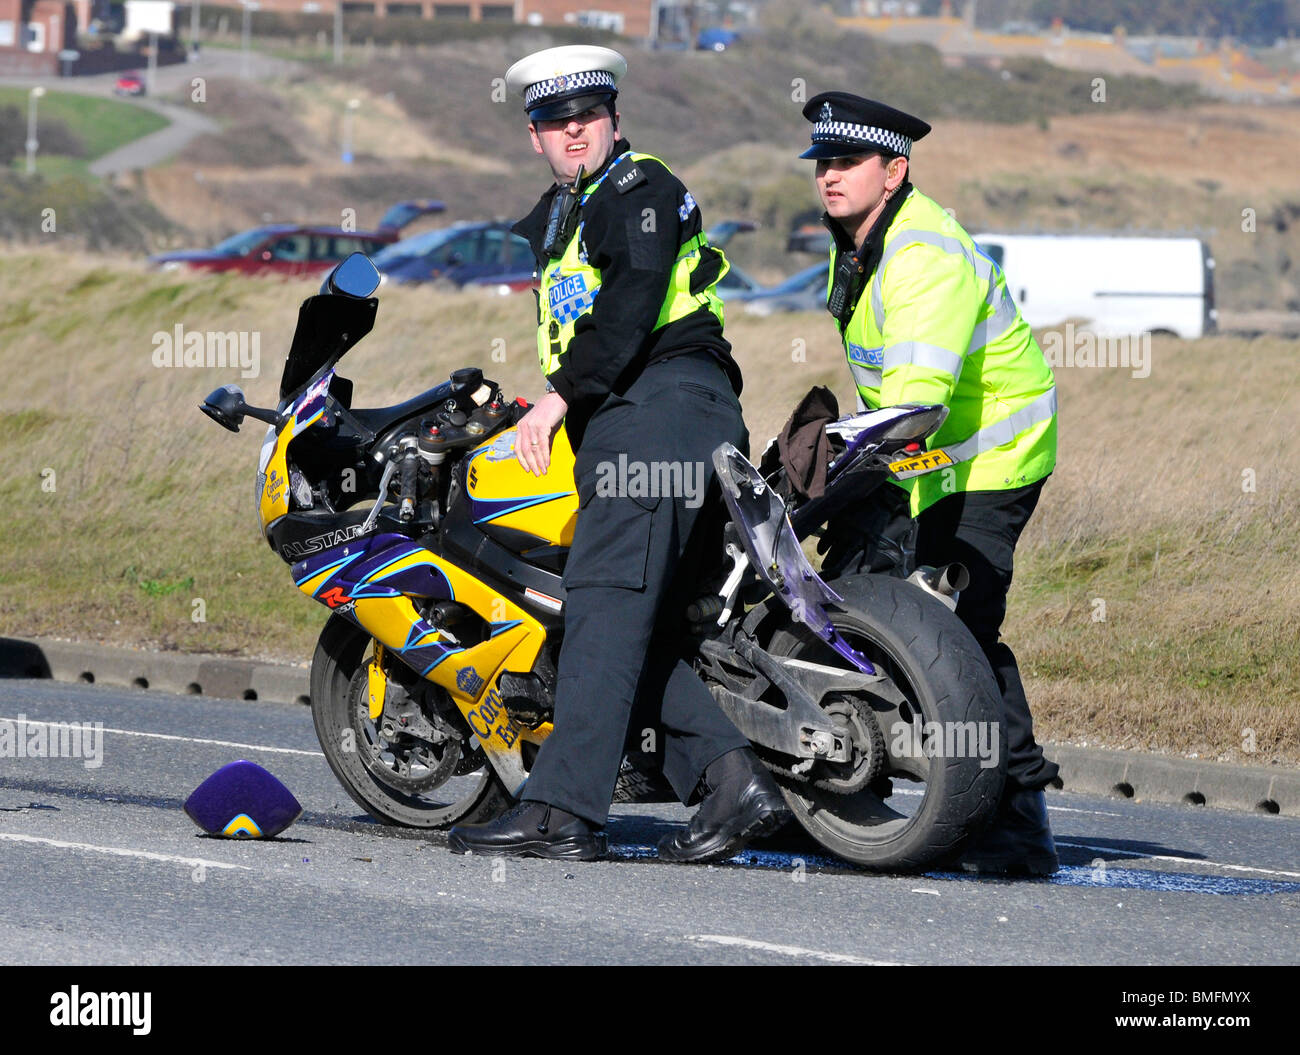 Accident de moto, des agents de police enlever les débris d'une moto s'est écrasé sur la route, la Grande-Bretagne, Royaume-Uni Banque D'Images